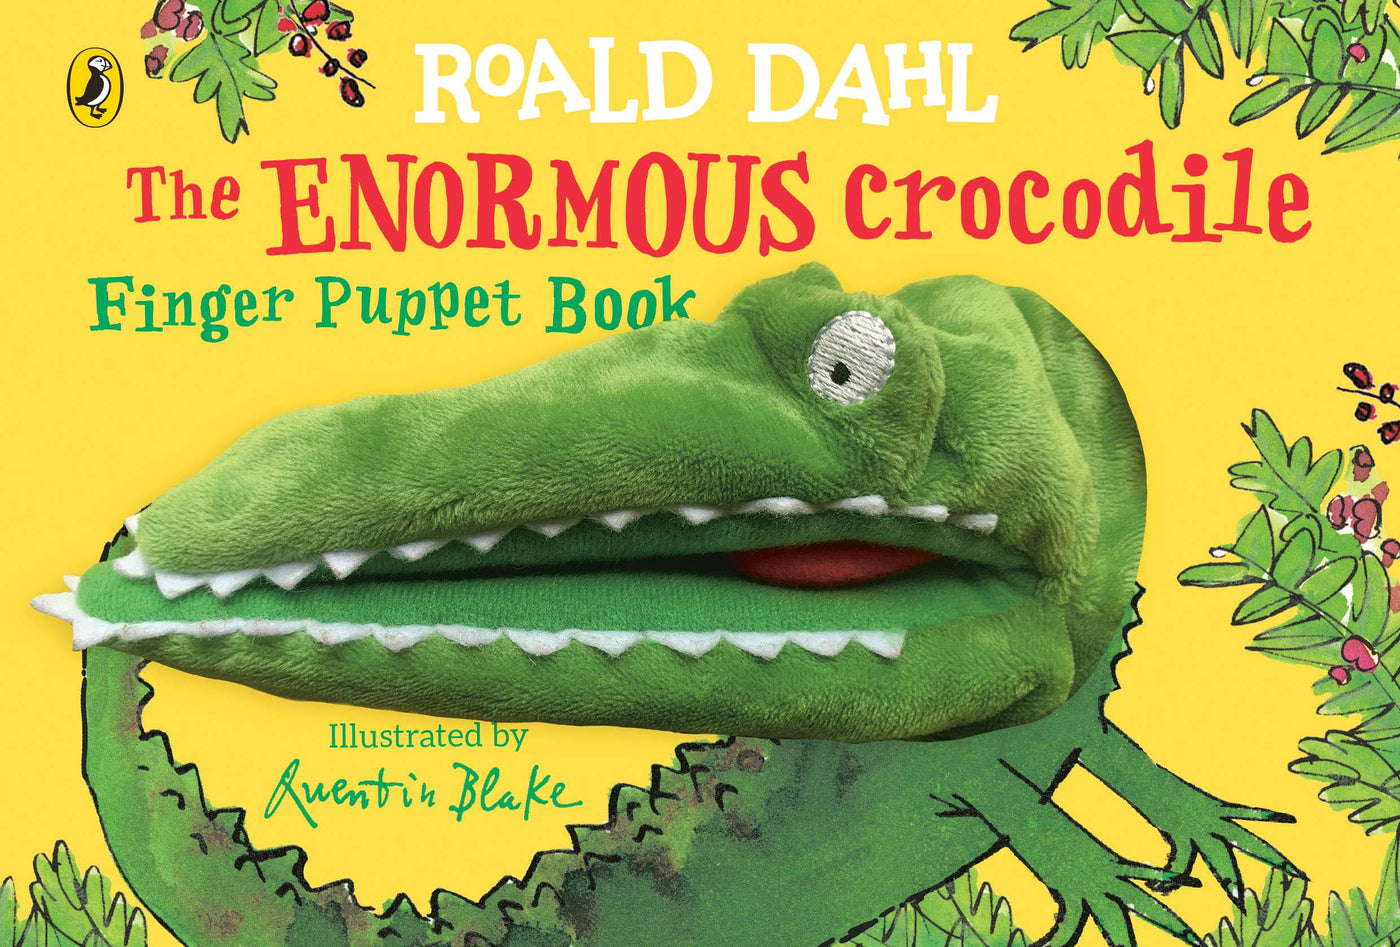 Roald Dahl's The Enormous Crocodile